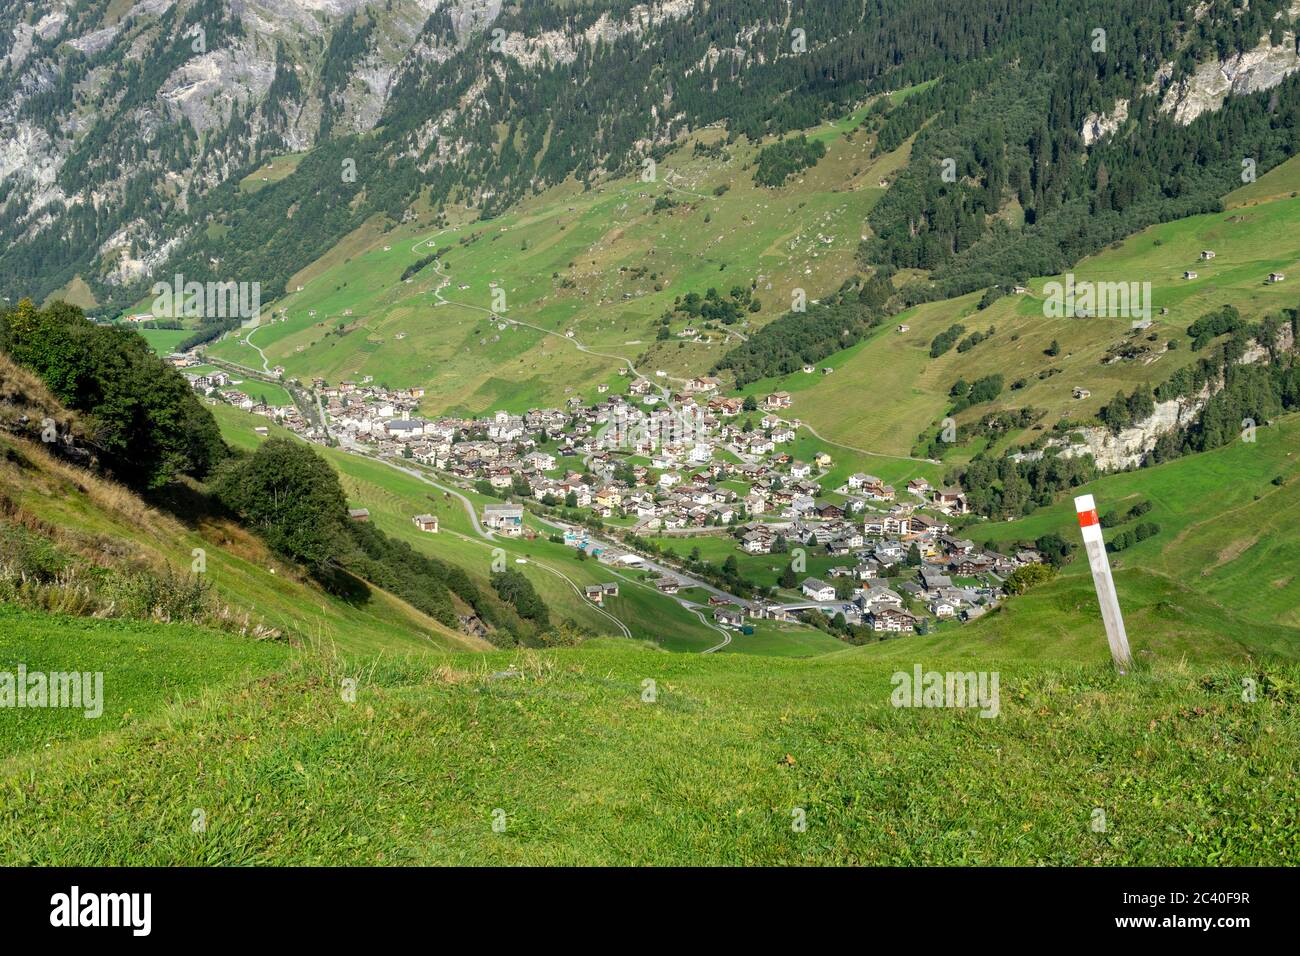 Das Dorf Vals im Valser Tal, Graubünden. Markierung eines Bergwanderweges. Stock Photo